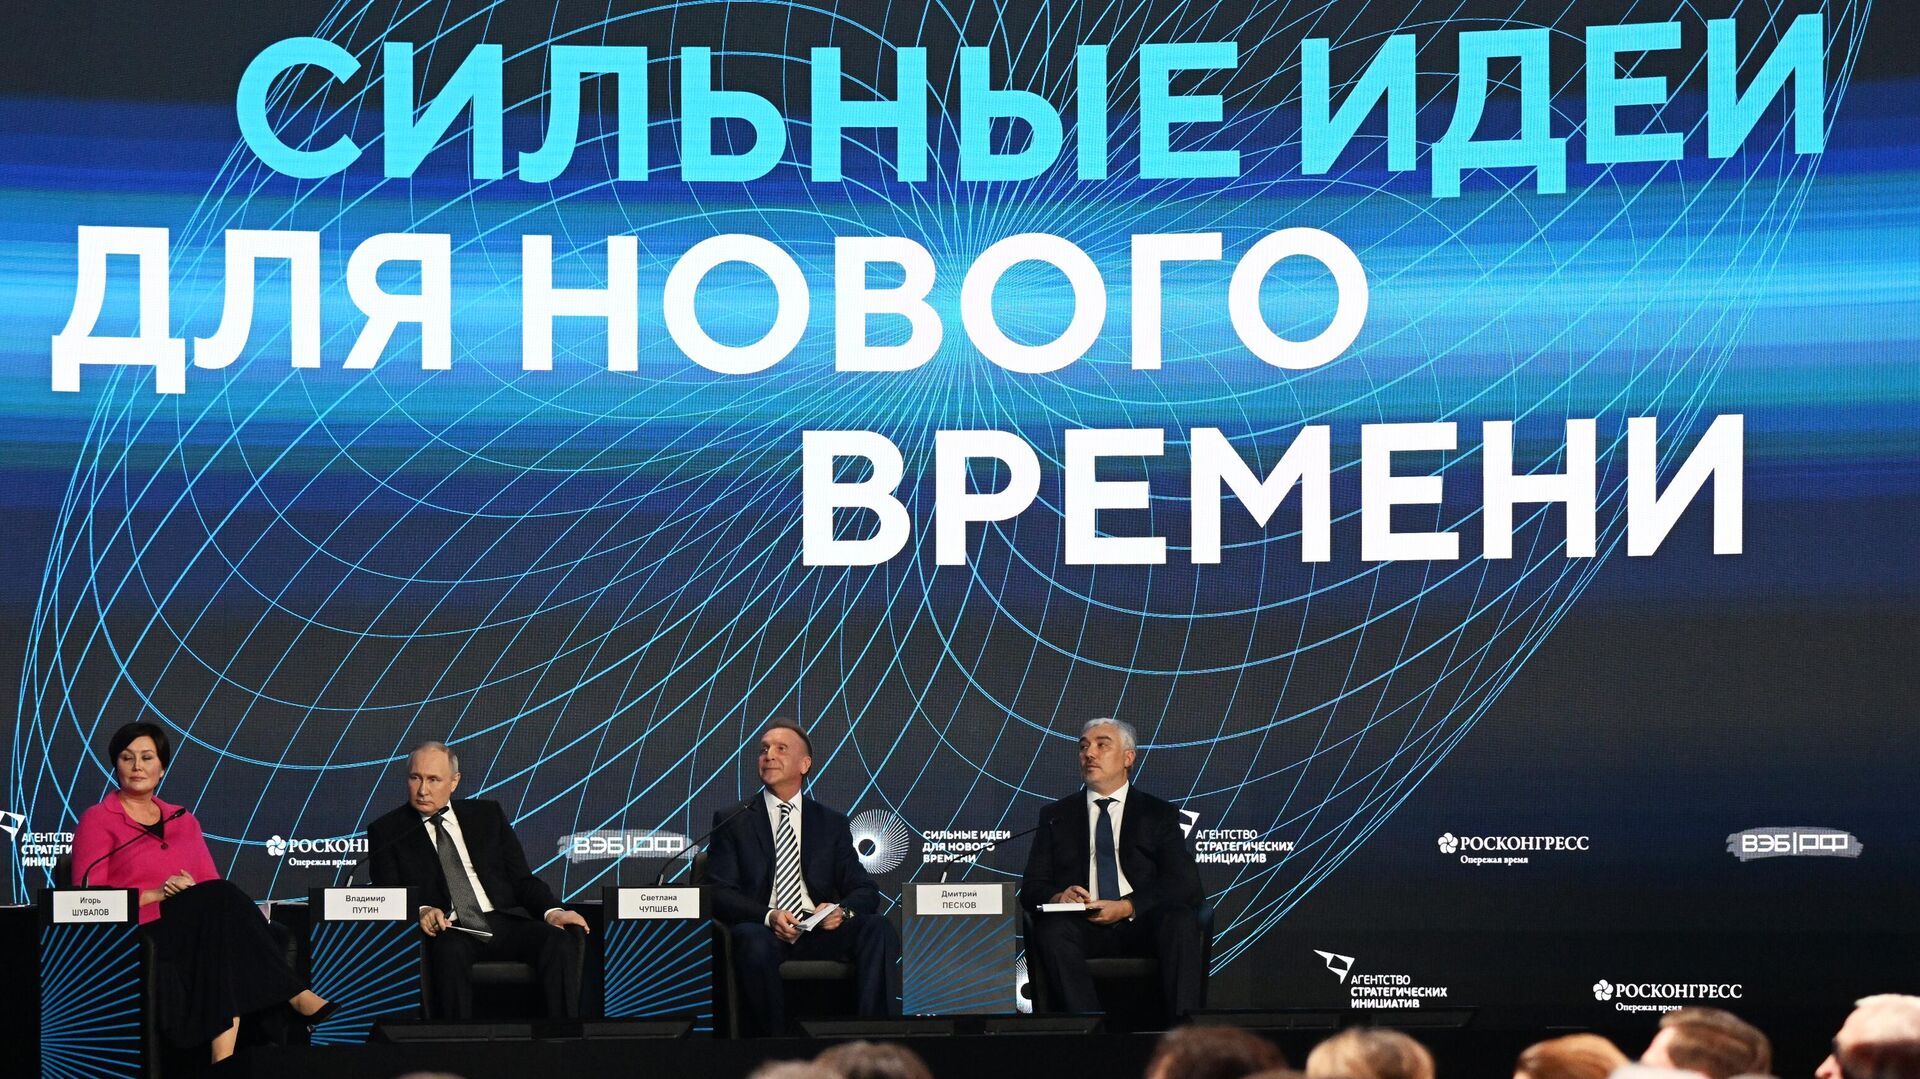 Президент РФ Владимир Путин принимает участие в форуме Сильные идеи для нового времени1